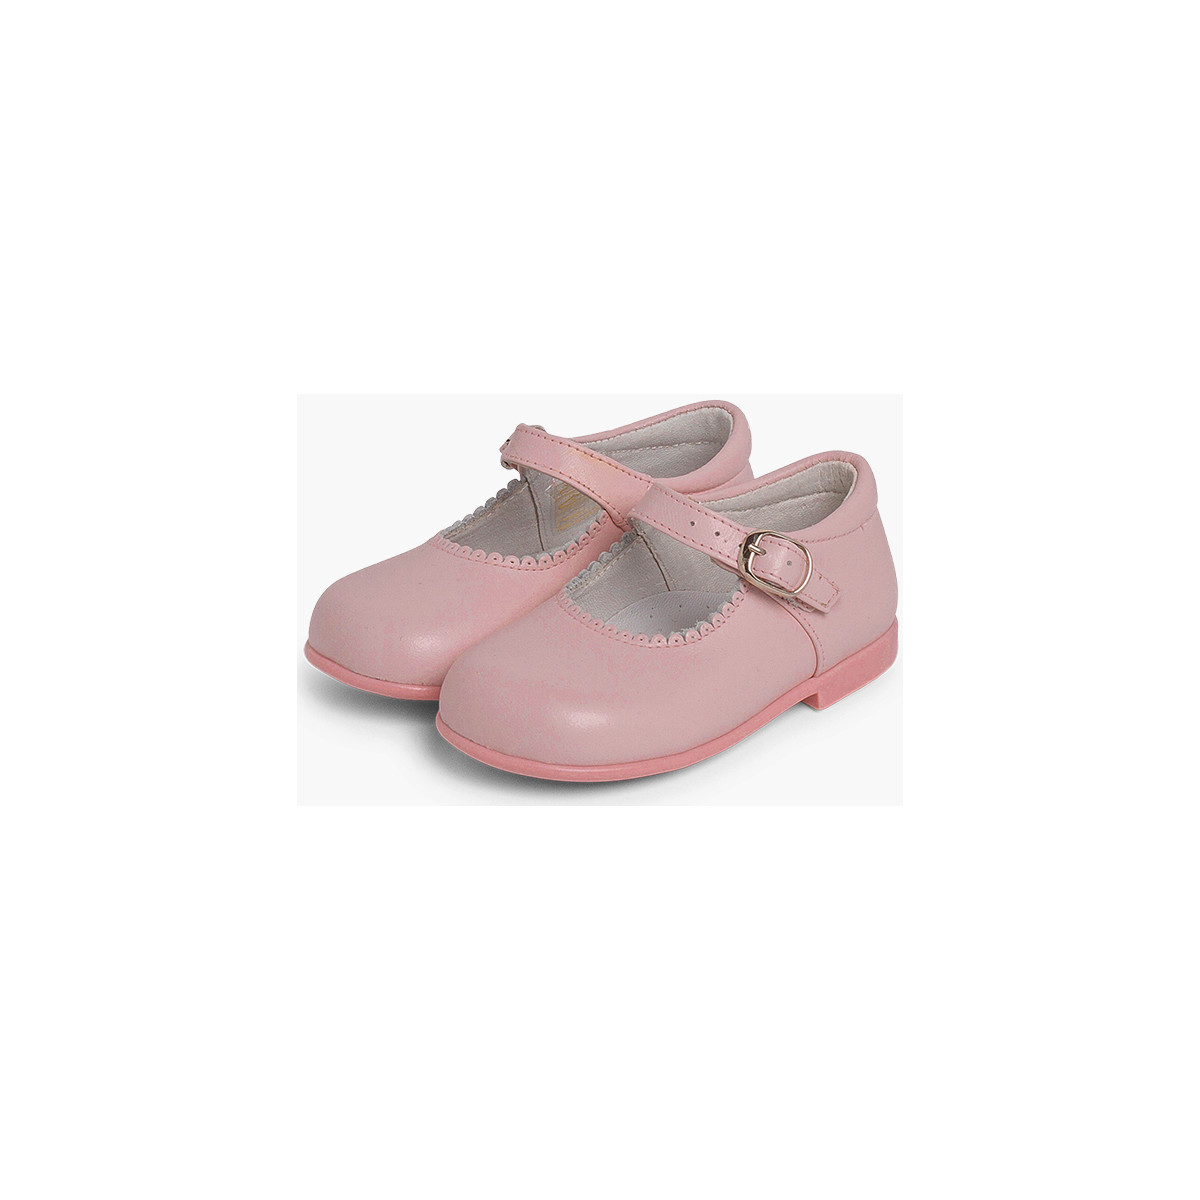 Pisamonas Rose Chaussures babies à boucle en cuir y2dJjGuH